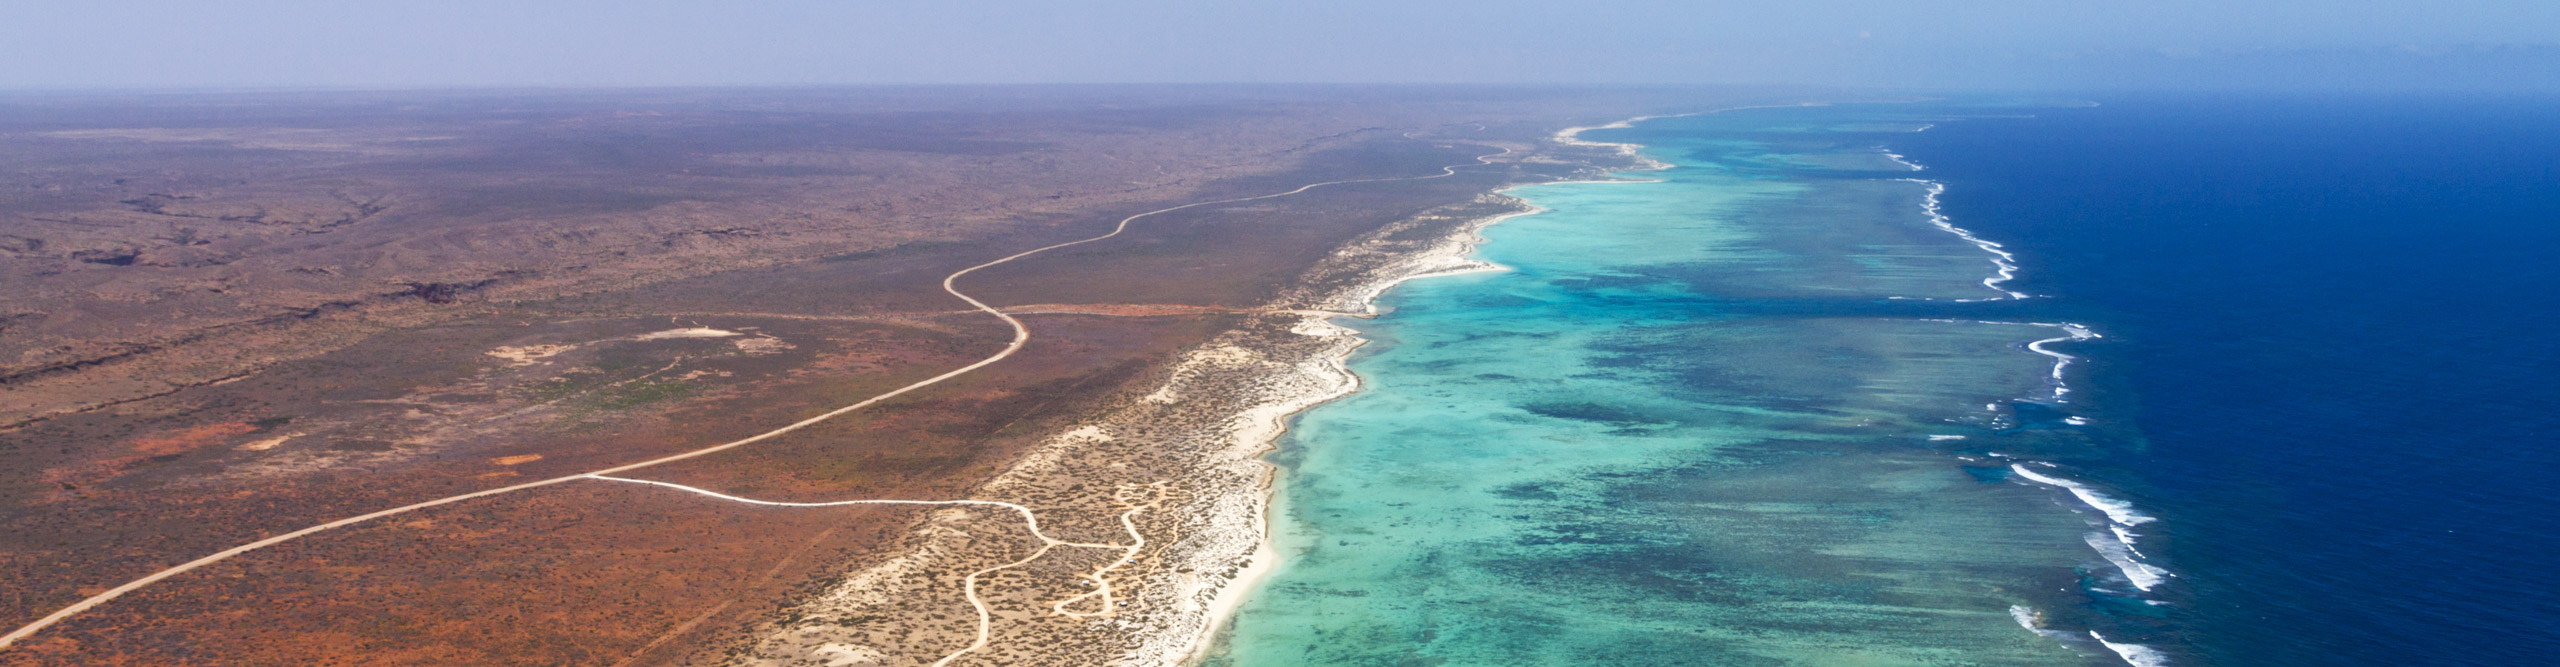 Aerial view of Ningaloo Reef, Western Australia 